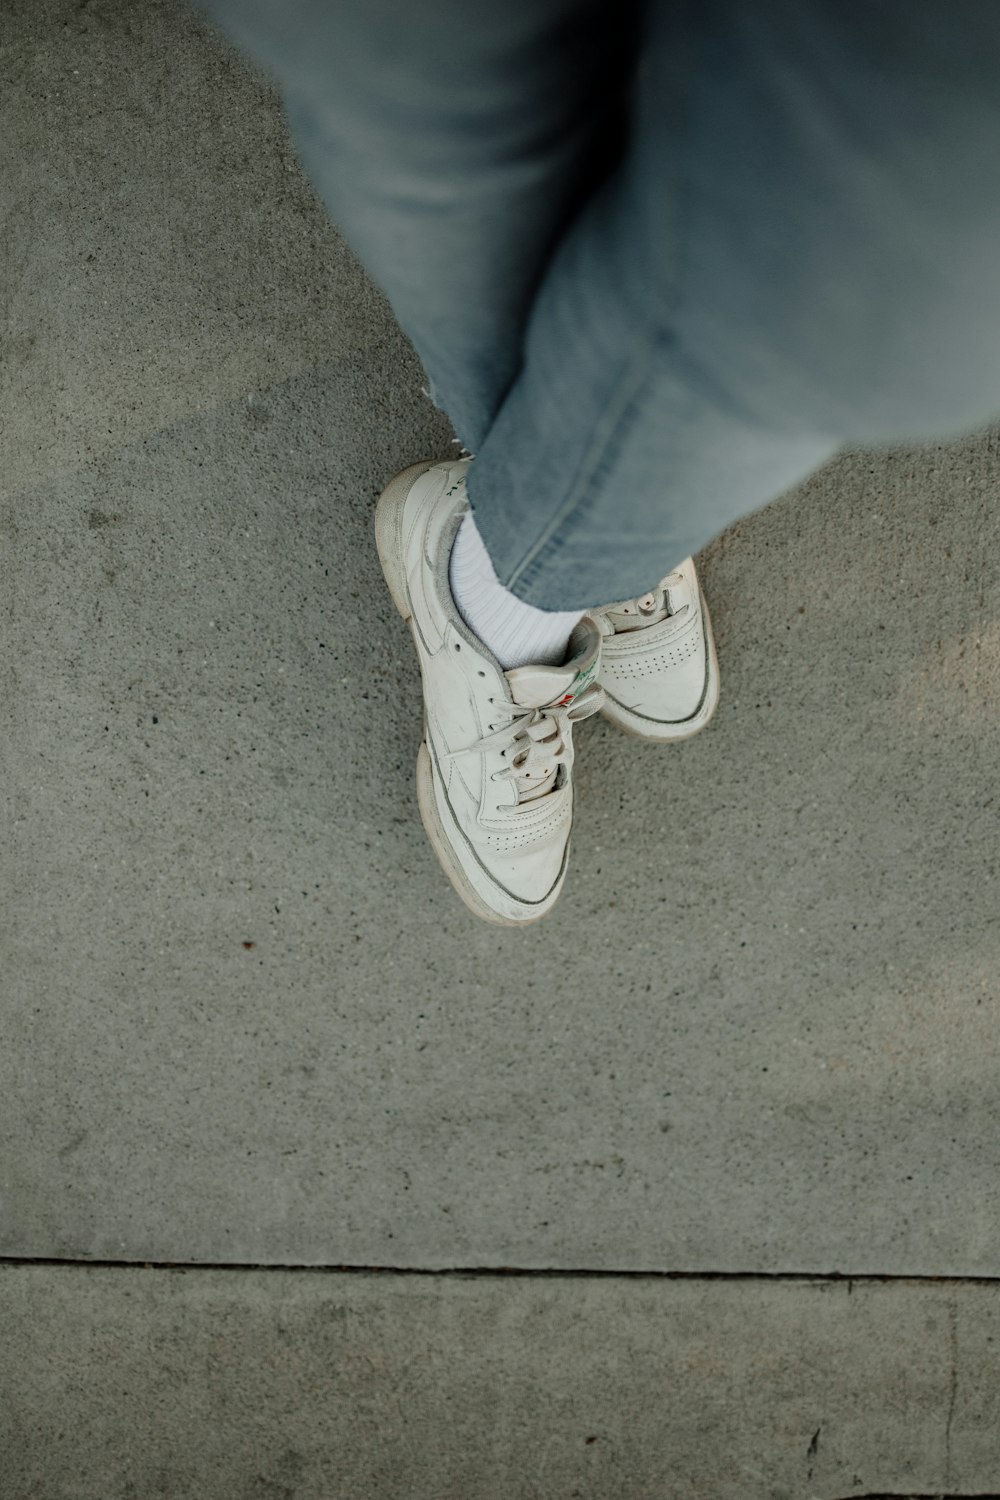 una persona parada en una acera con zapatos blancos